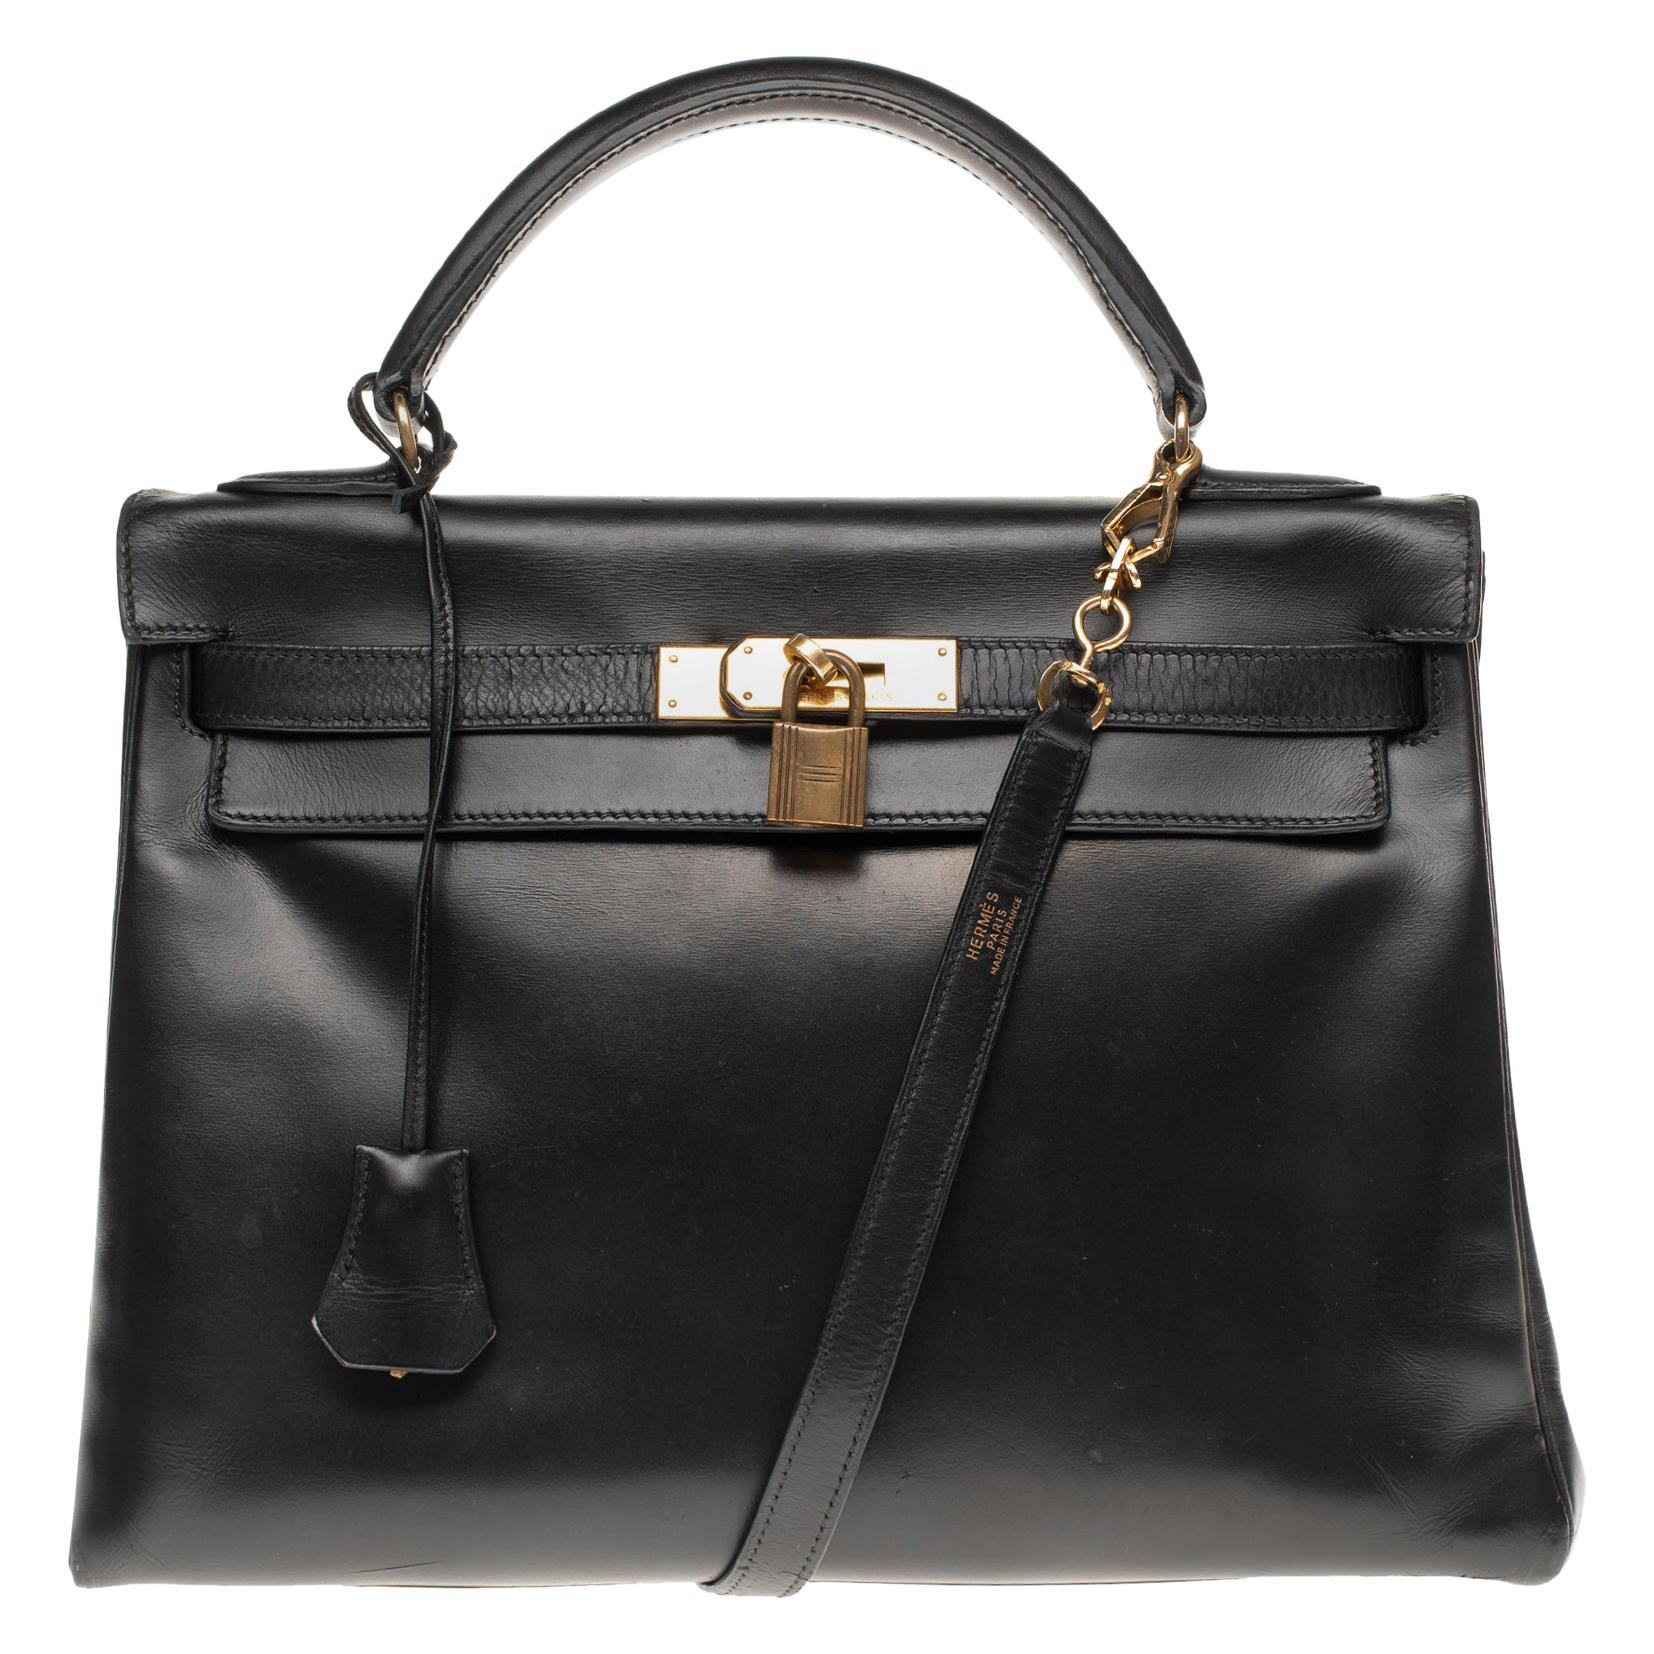 Hermès Kelly 32 cm strap shoulder bag in black calfskin box and gold hardware